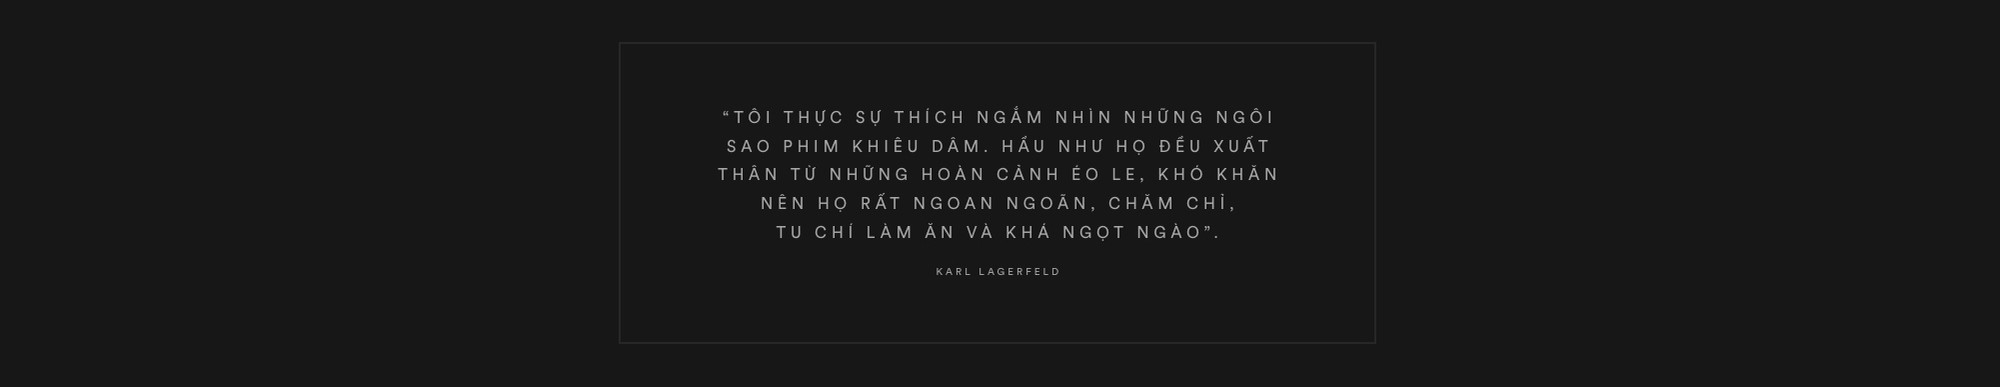 Karl Lagerfeld: 85 năm cuộc đời chỉ gắn liền với hai chữ, vài người đàn ông và một chú mèo - Ảnh 11.